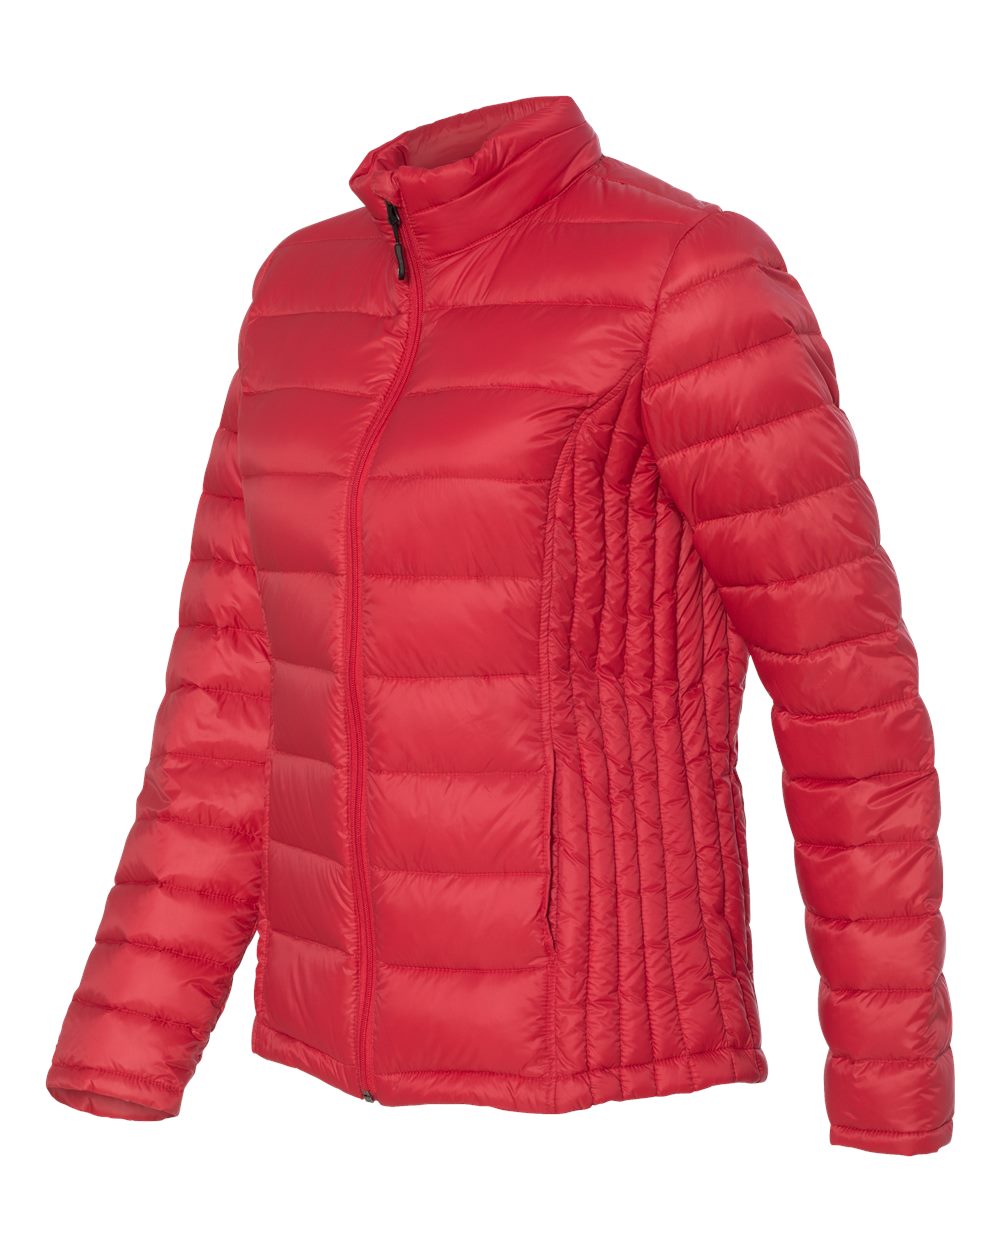 Weatherproof - Women's Packable Down Jacket - 15600WThe Trophy Trolley